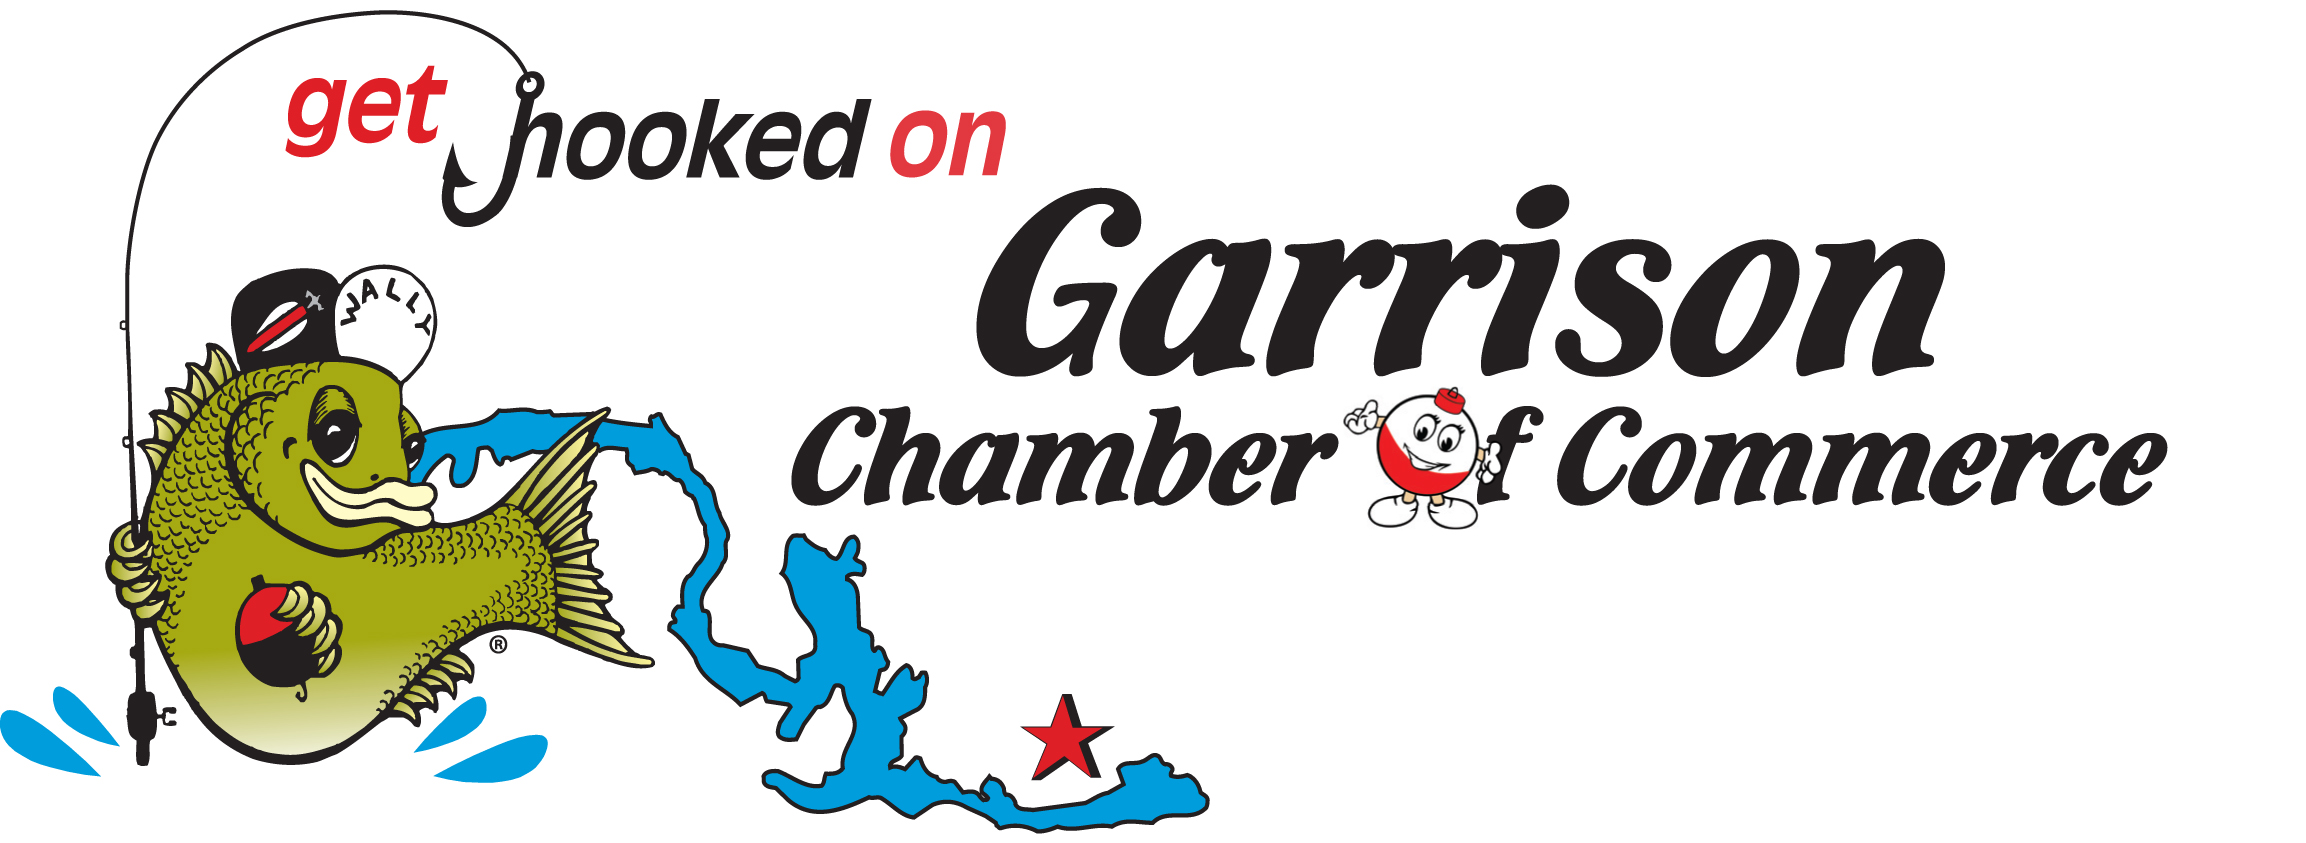 Garrison Chamber of Commerce logo